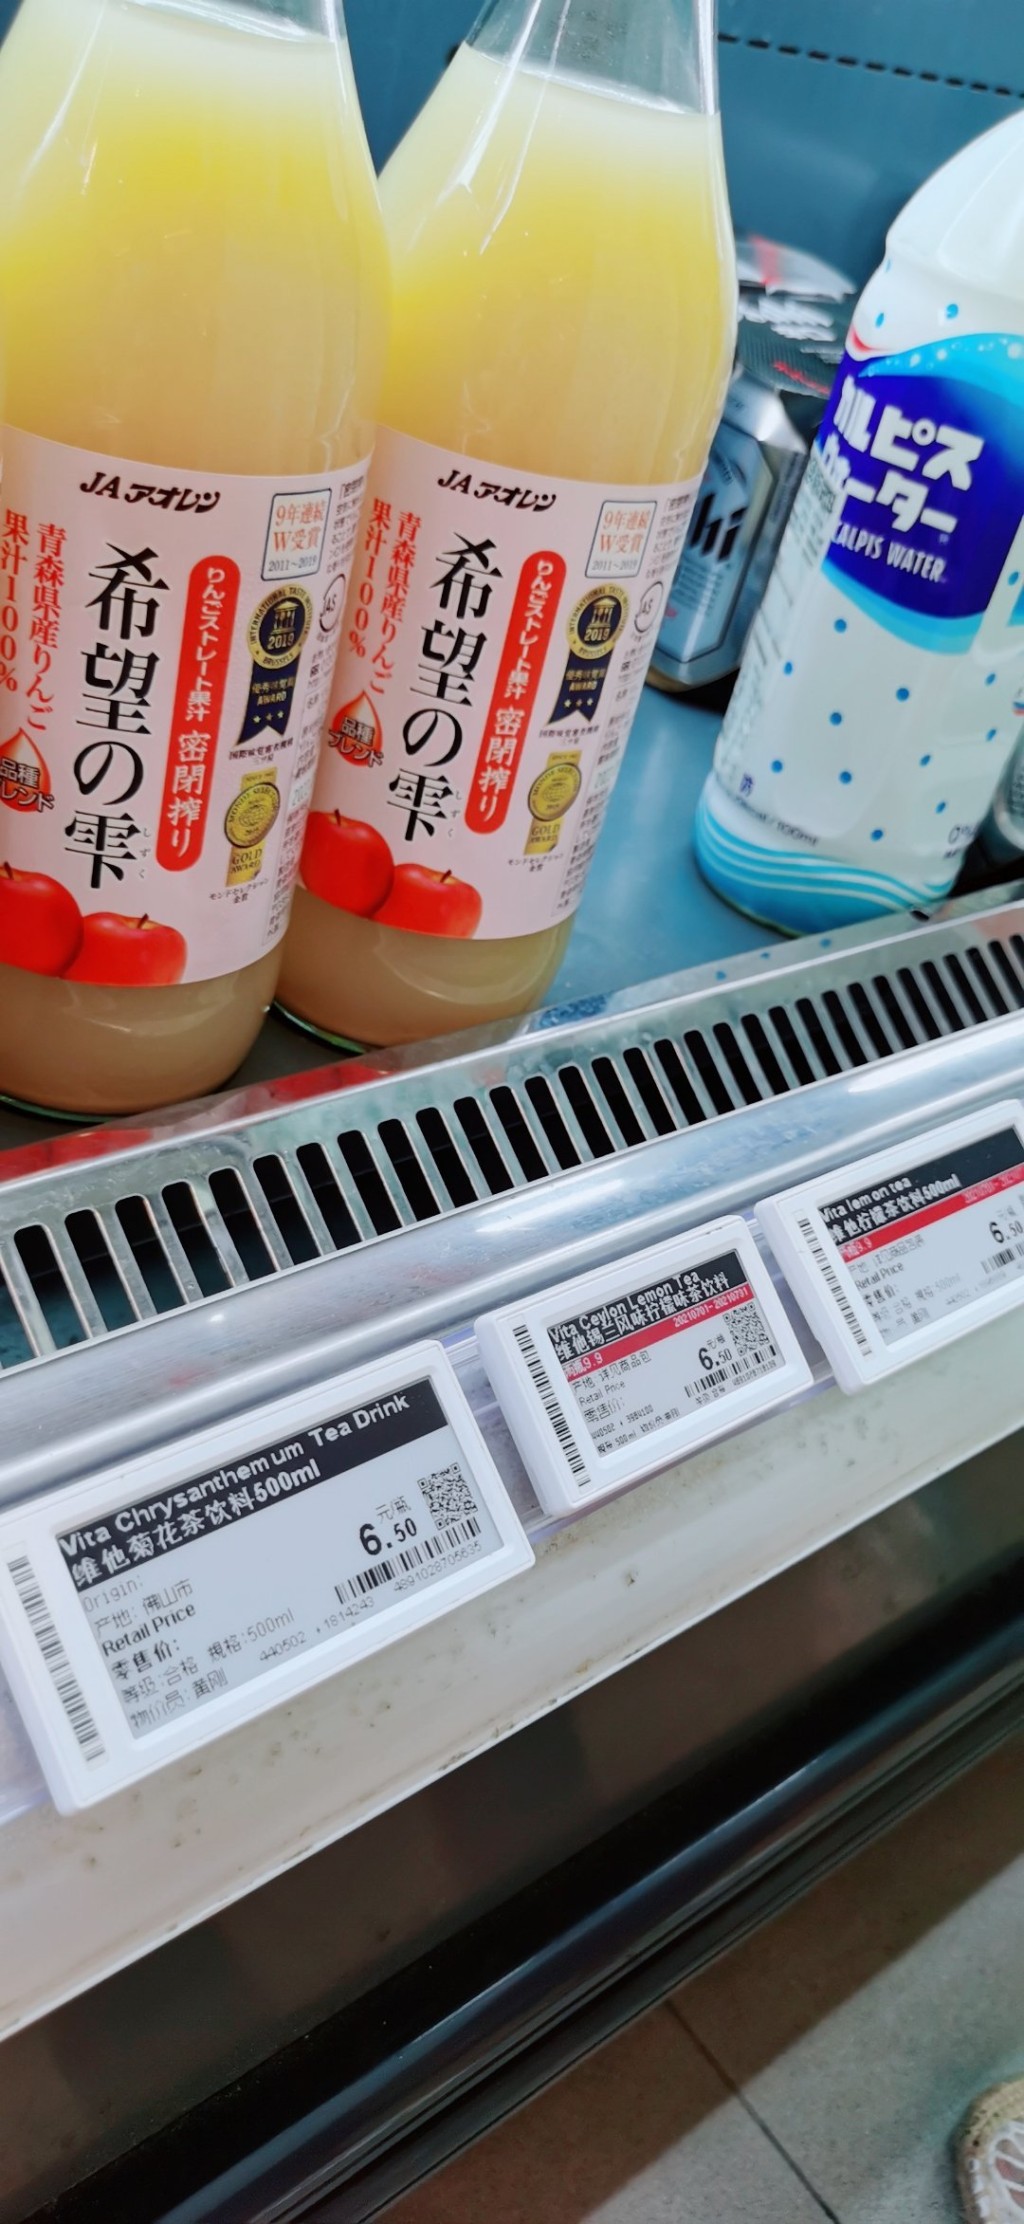 深圳有超市下架維他產品連標貼也未及移除。網上圖片